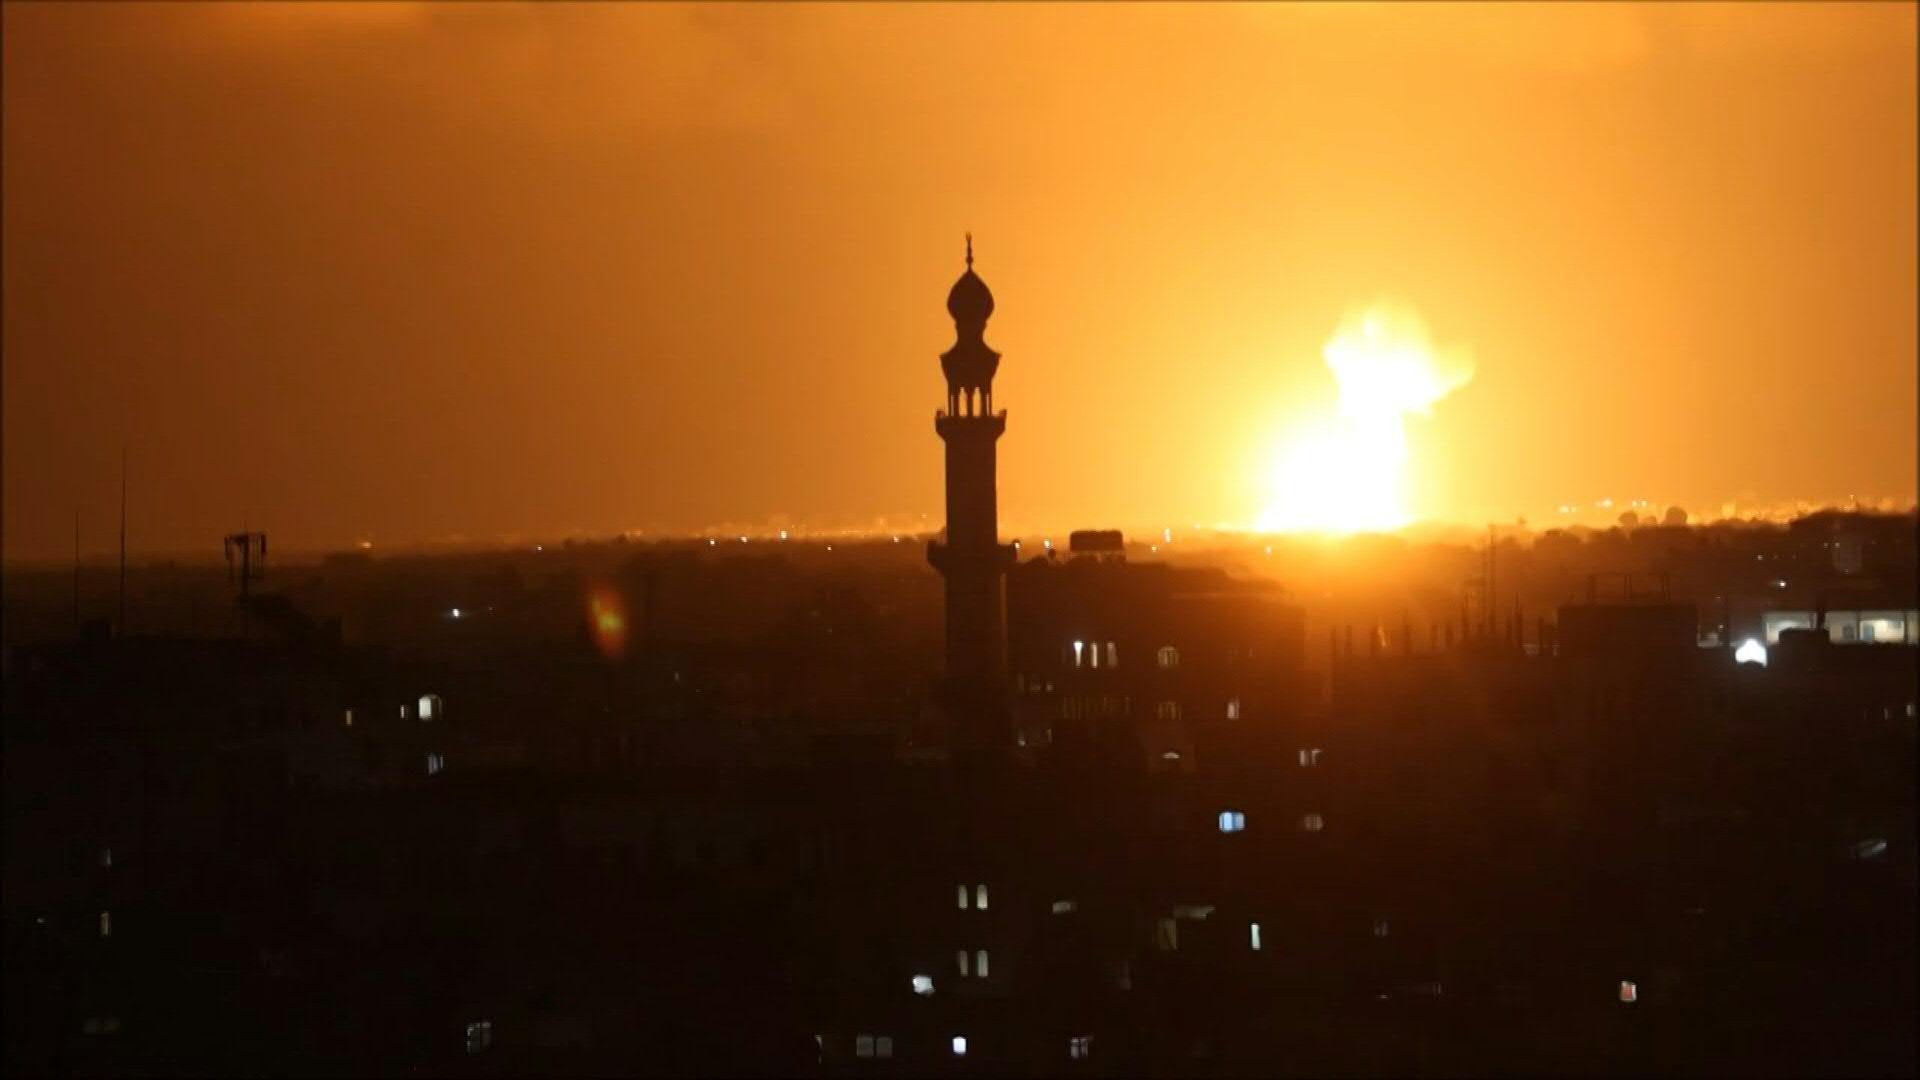 Yair Lapid aseguró que Israel no se quedará con los brazos cruzados ante los ataques desde Gaza